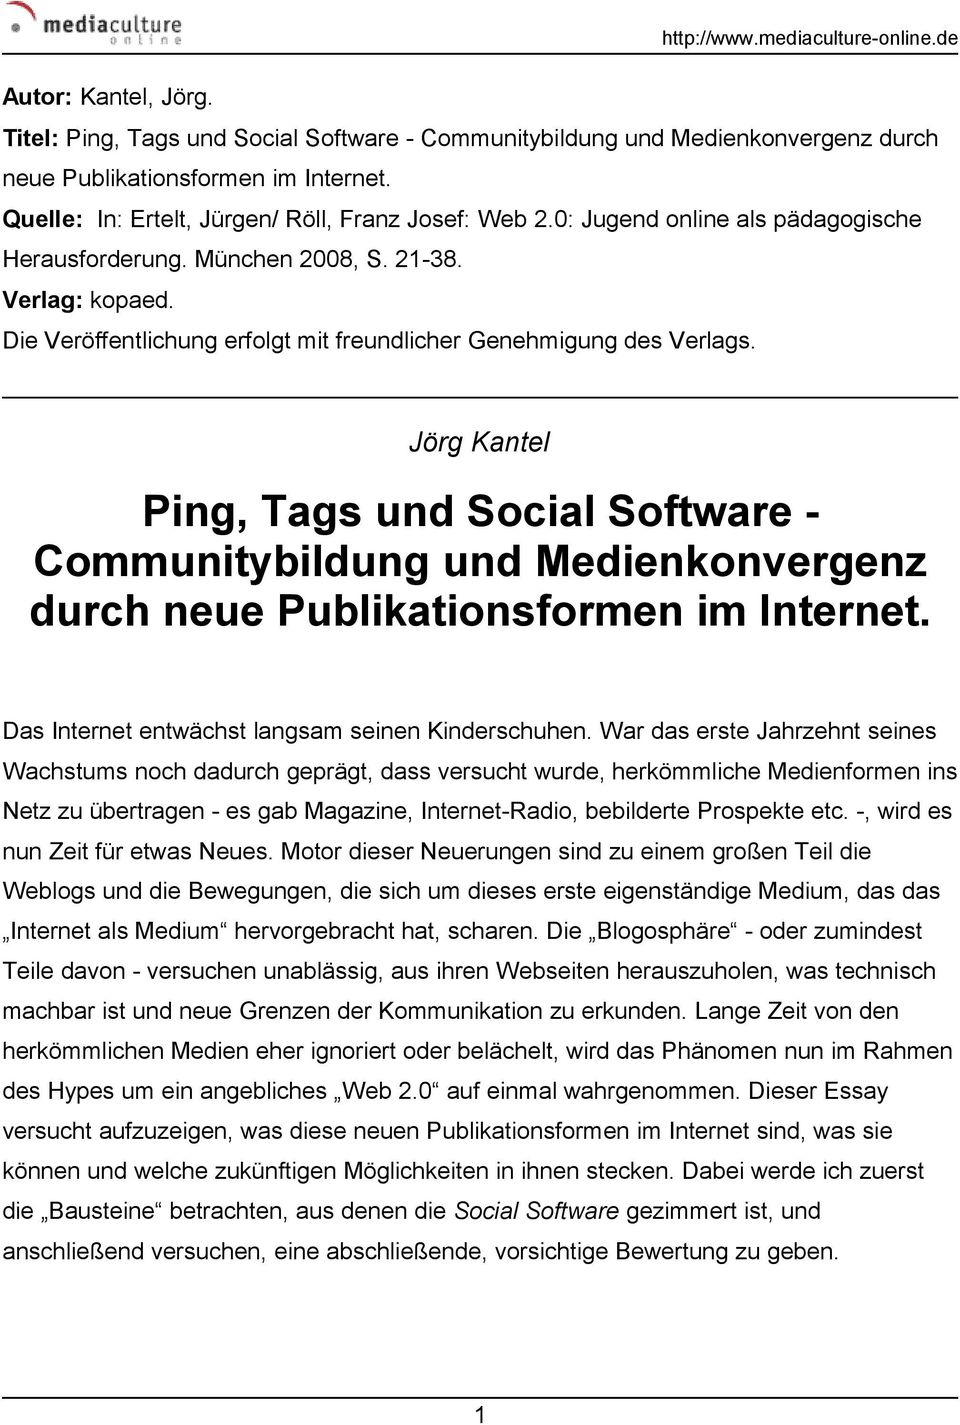 Jörg Kantel Ping, Tags und Social Software - Communitybildung und Medienkonvergenz durch neue Publikationsformen im Internet. Das Internet entwächst langsam seinen Kinderschuhen.